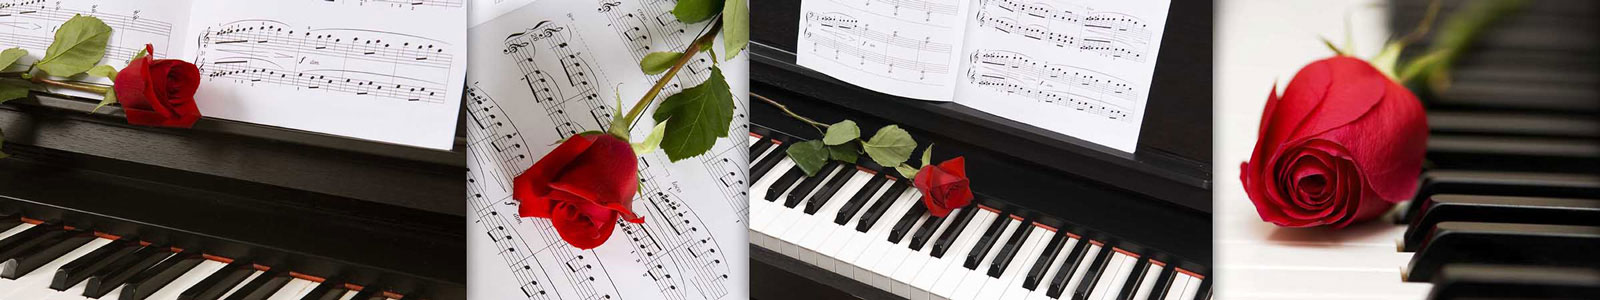 №3378 - Фортепиано, ноты и красная роза